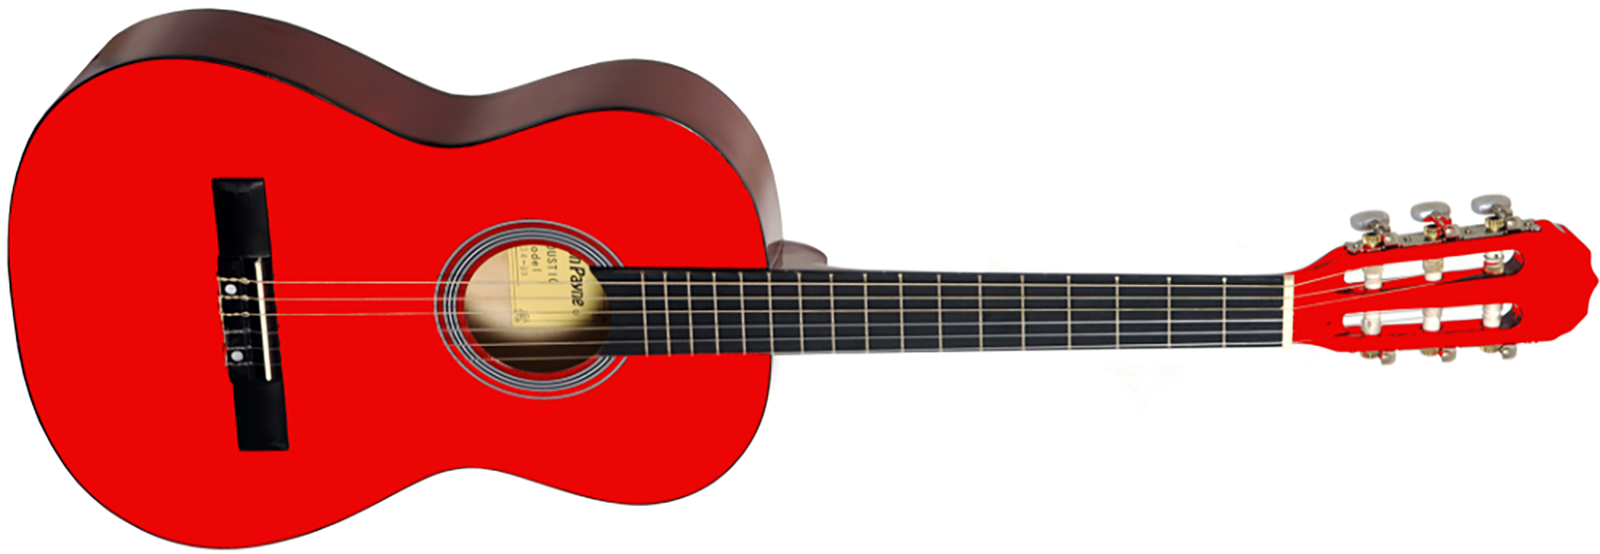  clip art image. Guitar clipart vector